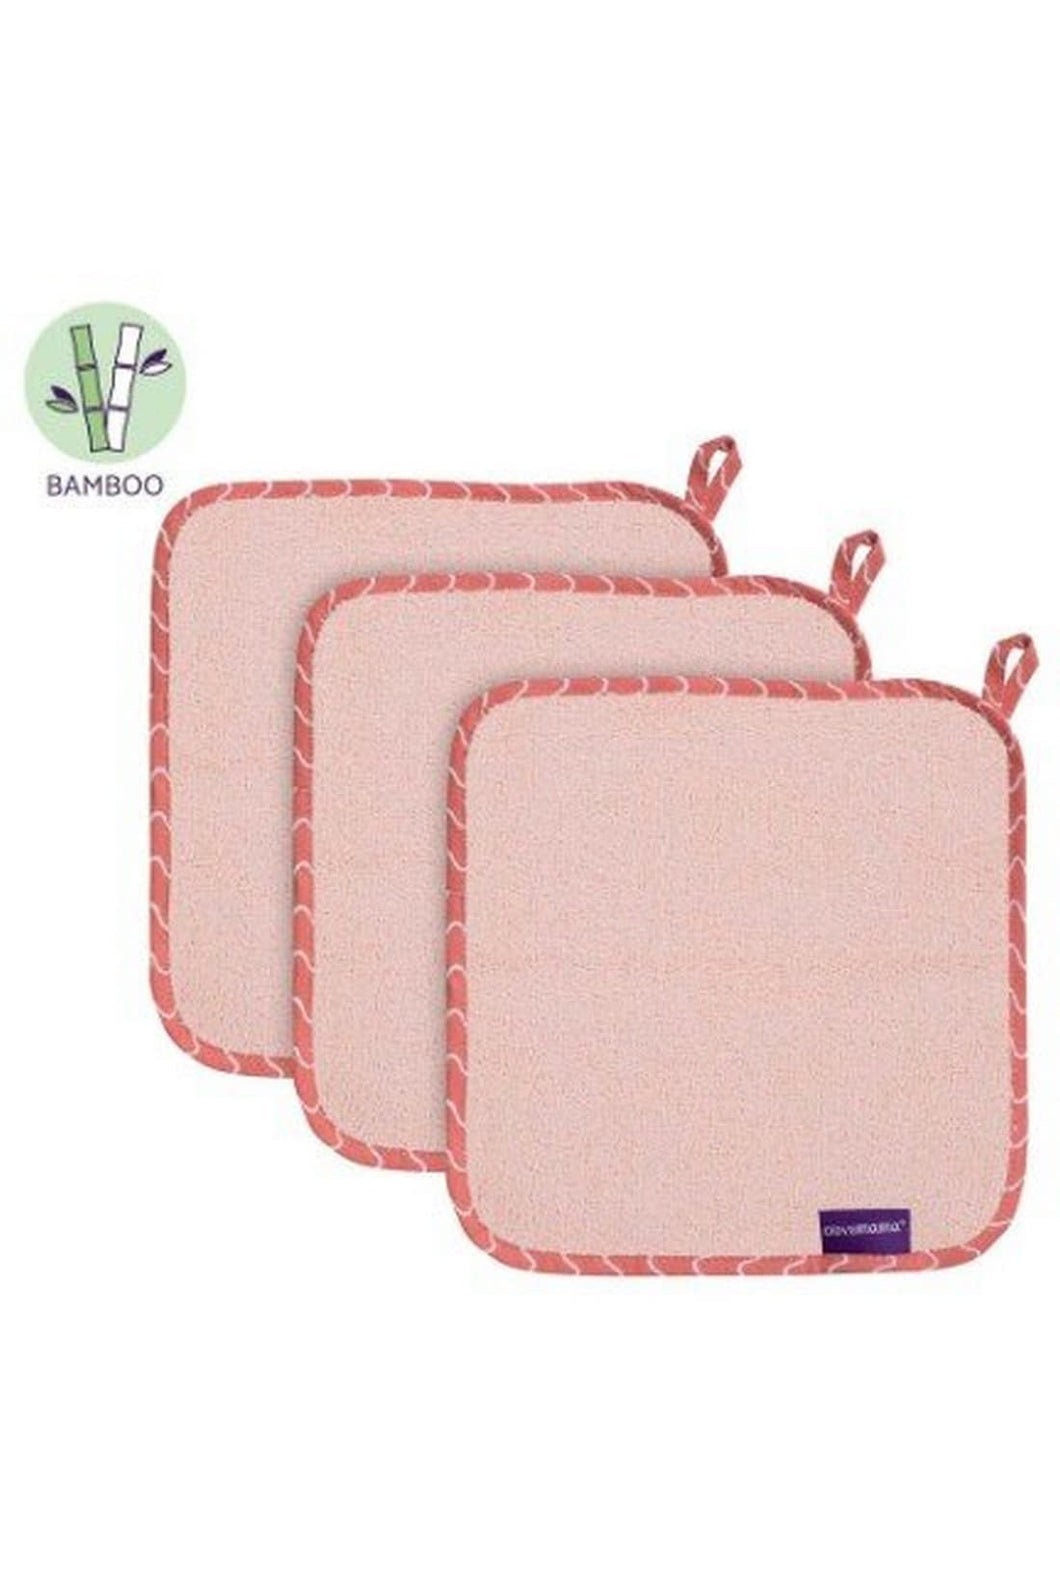 Clevamama Bamboo Baby Washcloth Set 3PK - Pink 1